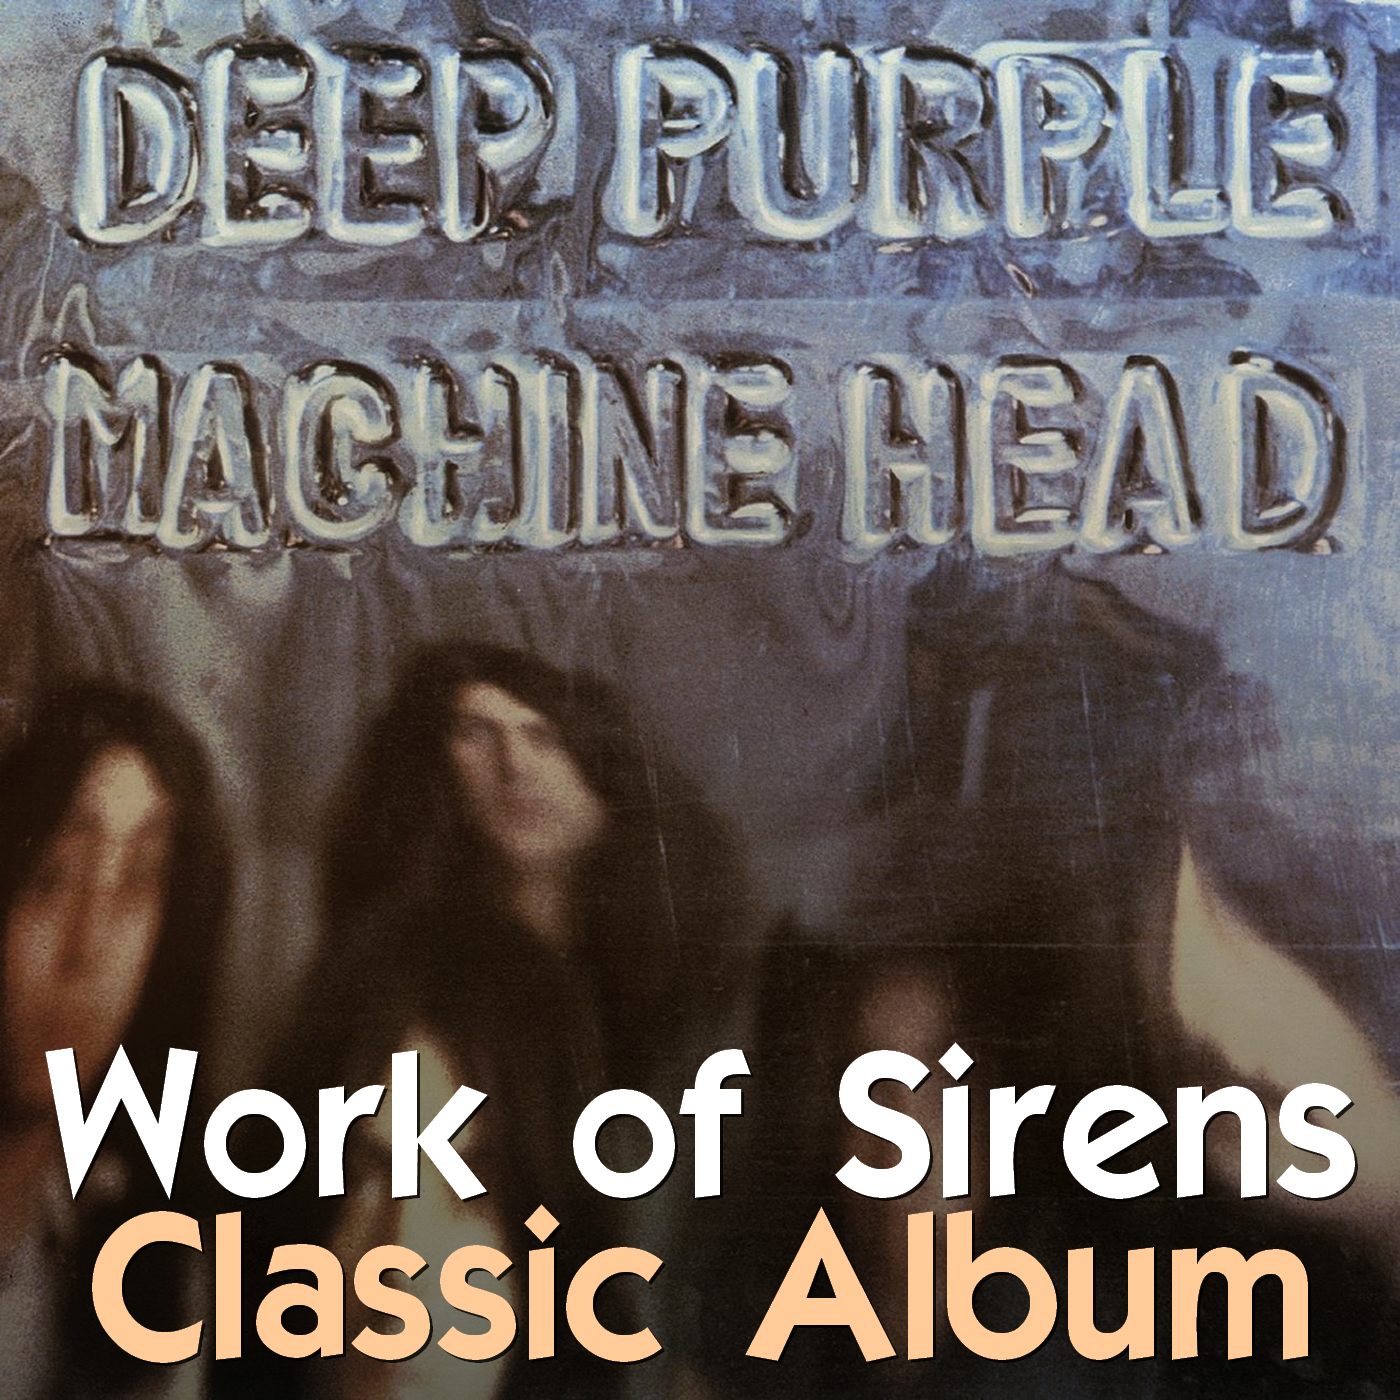 Die Hütte brennt: Deep Purples Machine Head